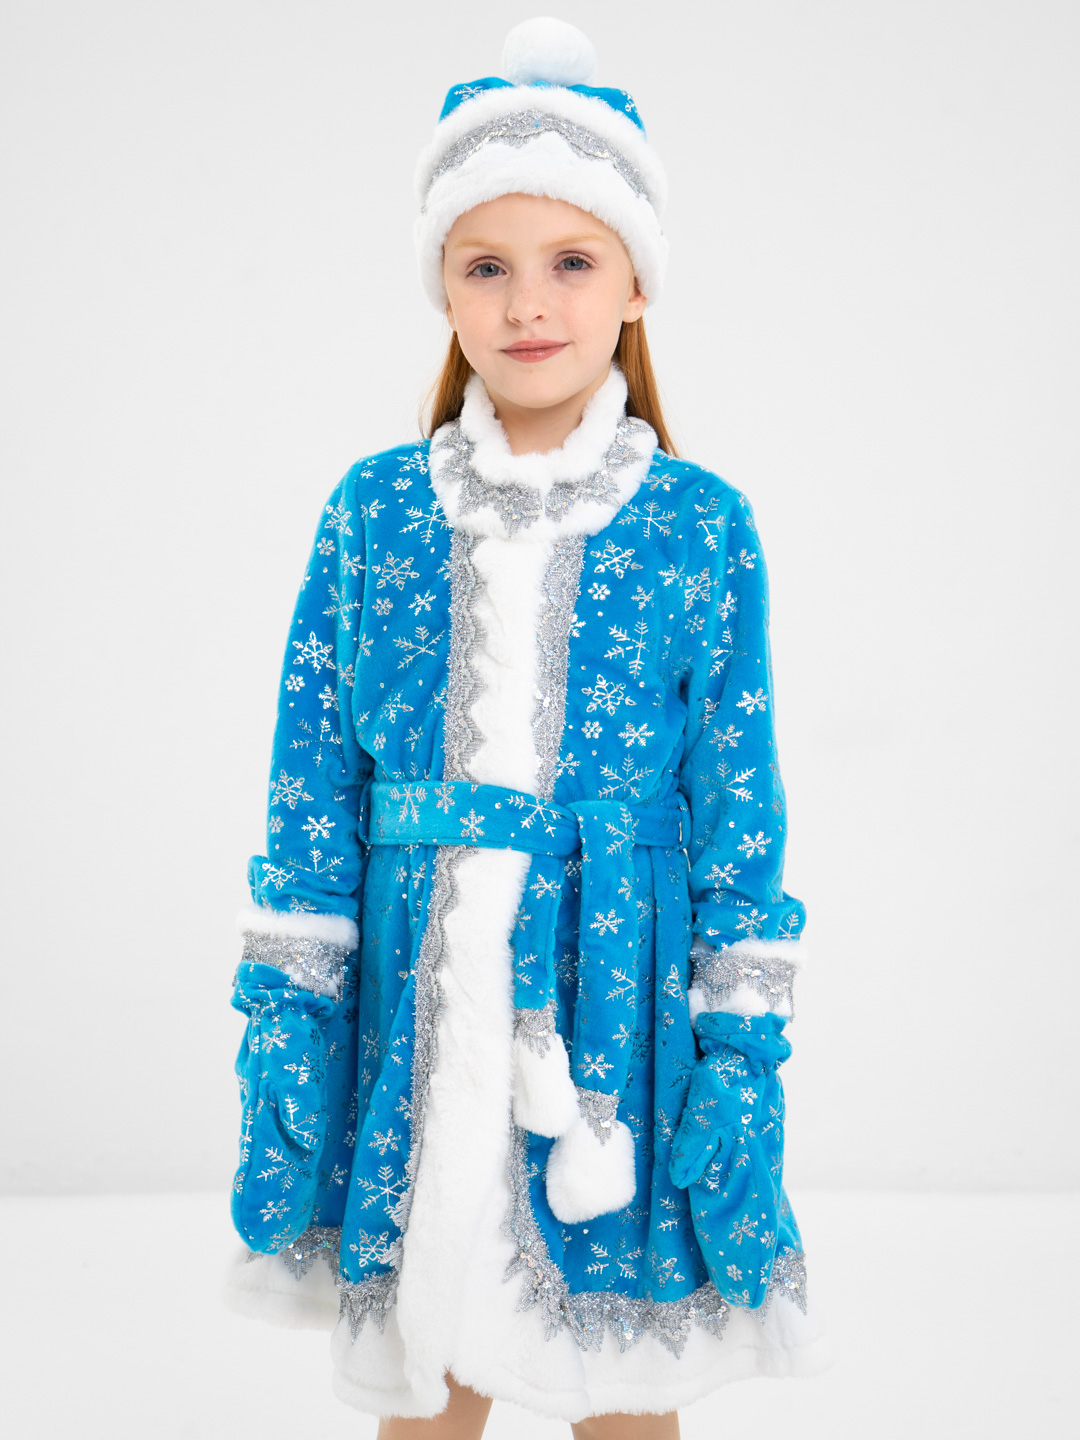 Каким может быть костюм Снегурочки для девочки